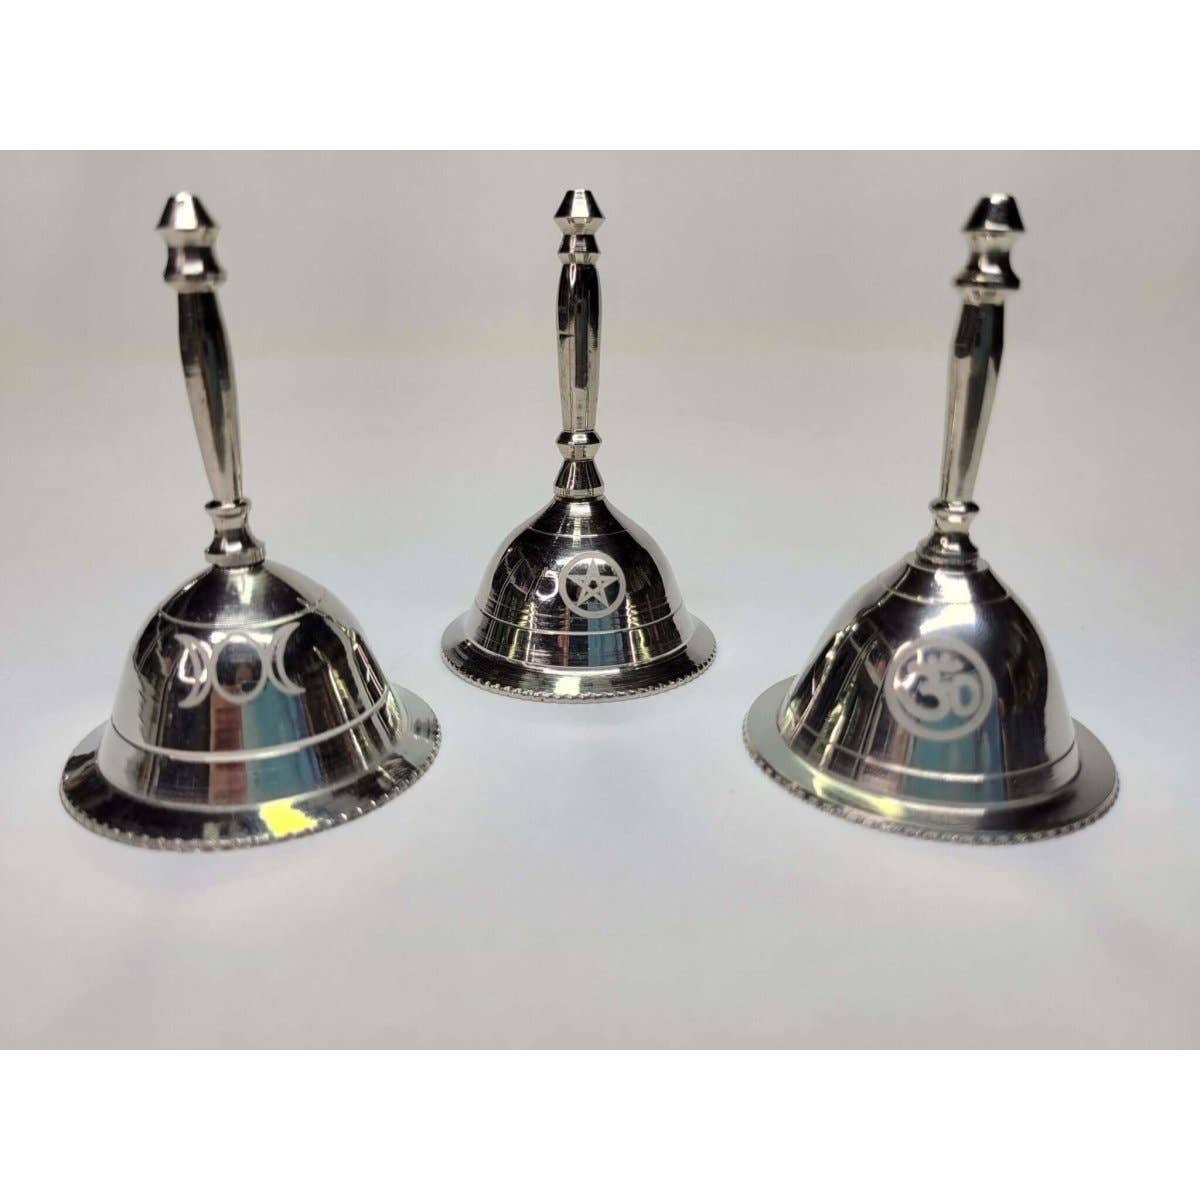 Altar Bells: Triple Moon, Pentacle, OM